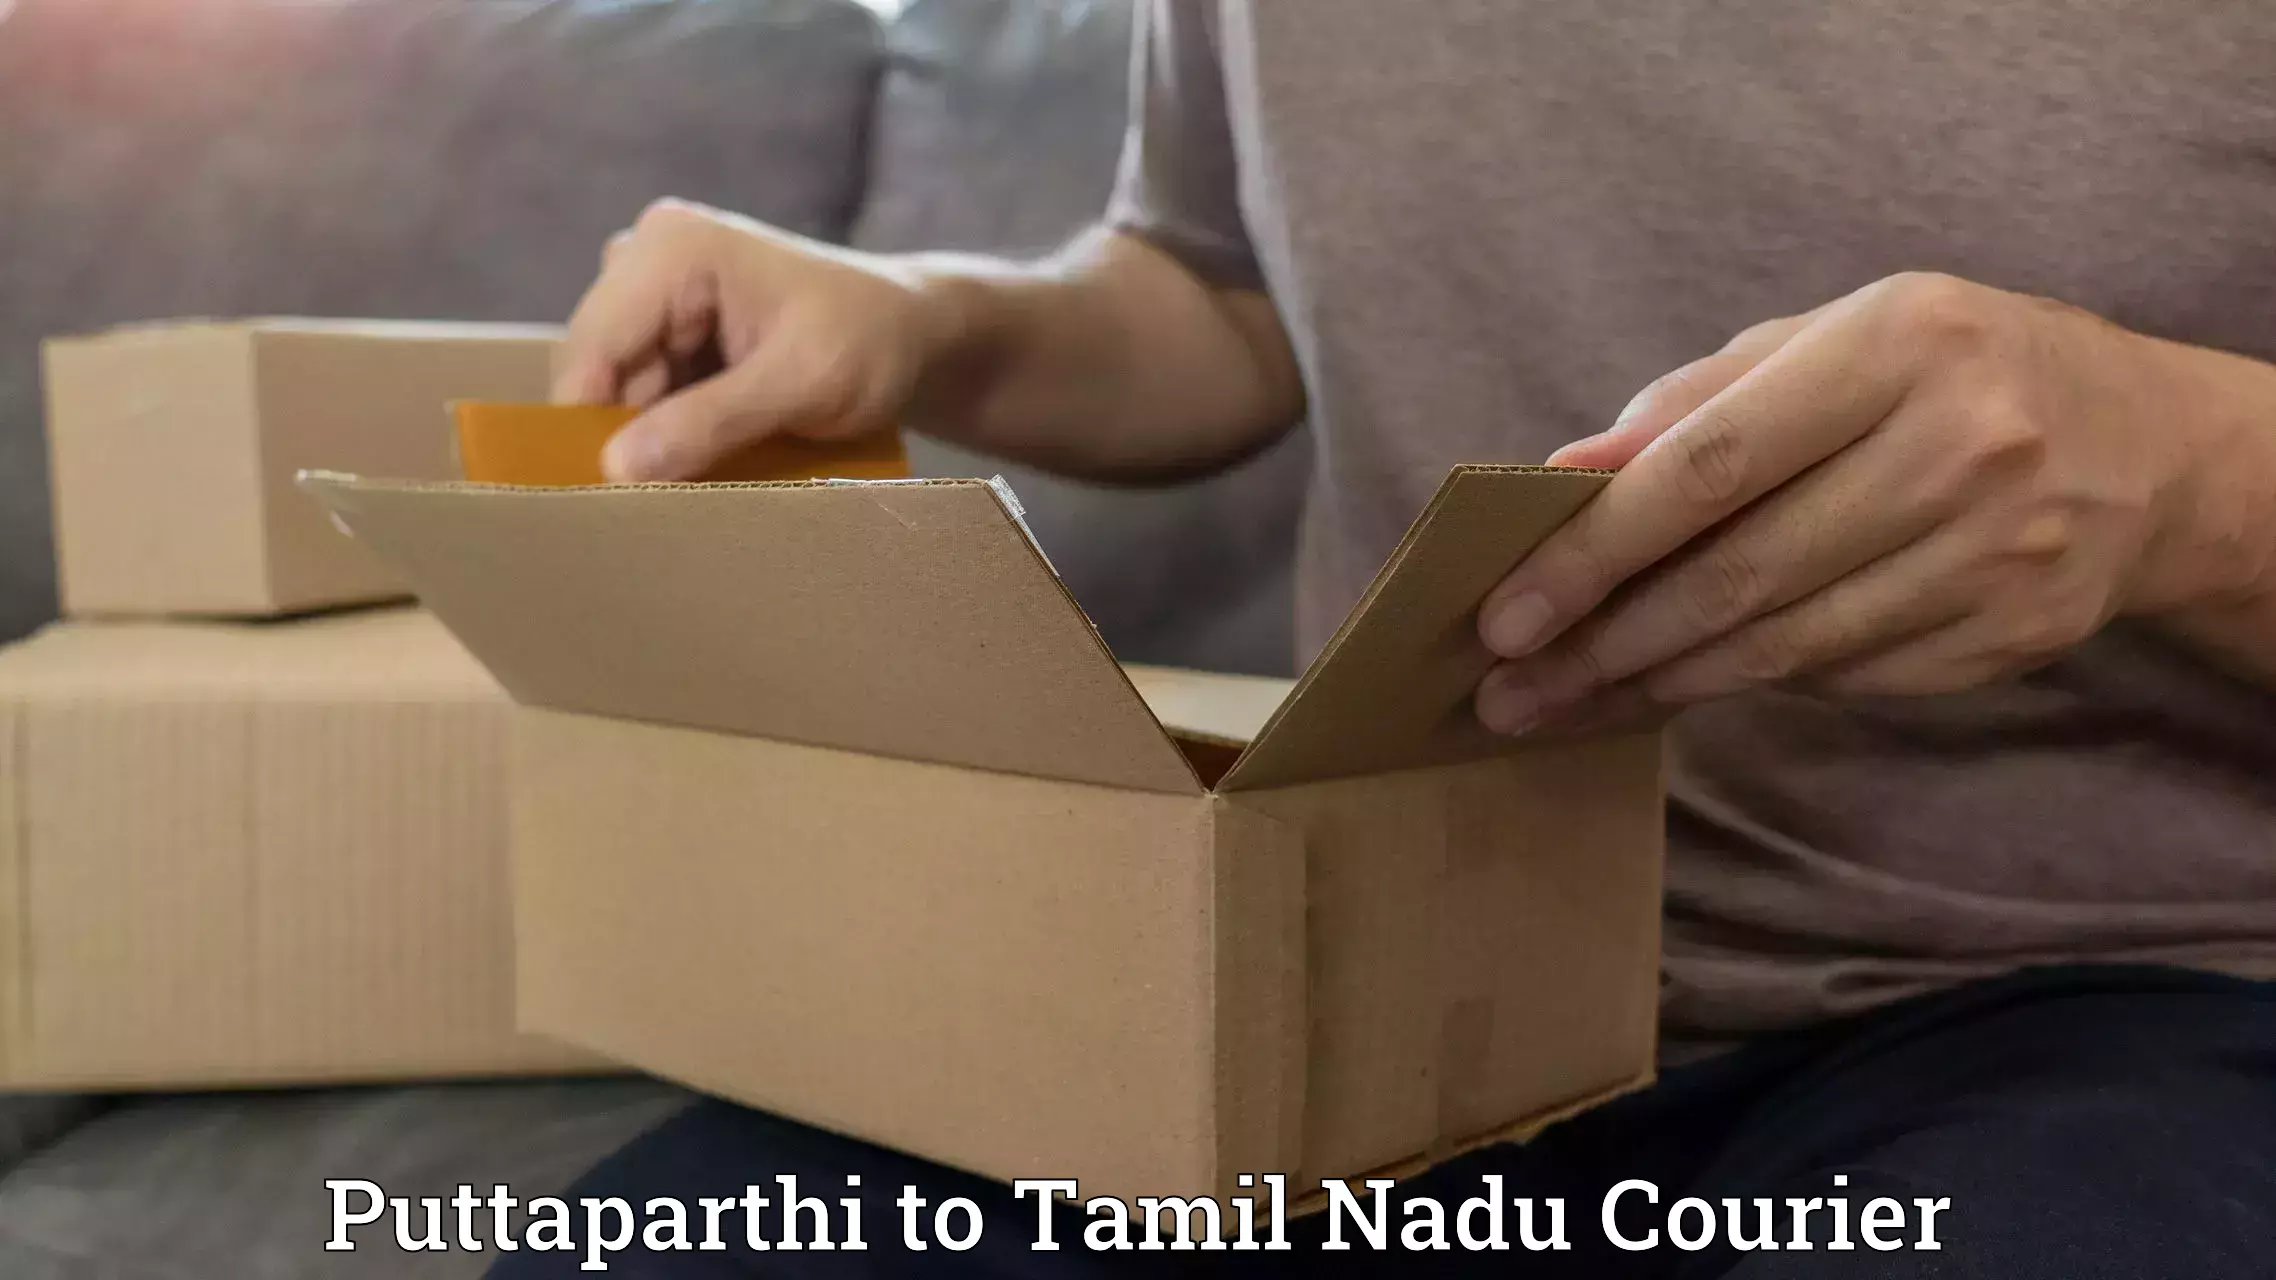 User-friendly courier app Puttaparthi to Tamil Nadu